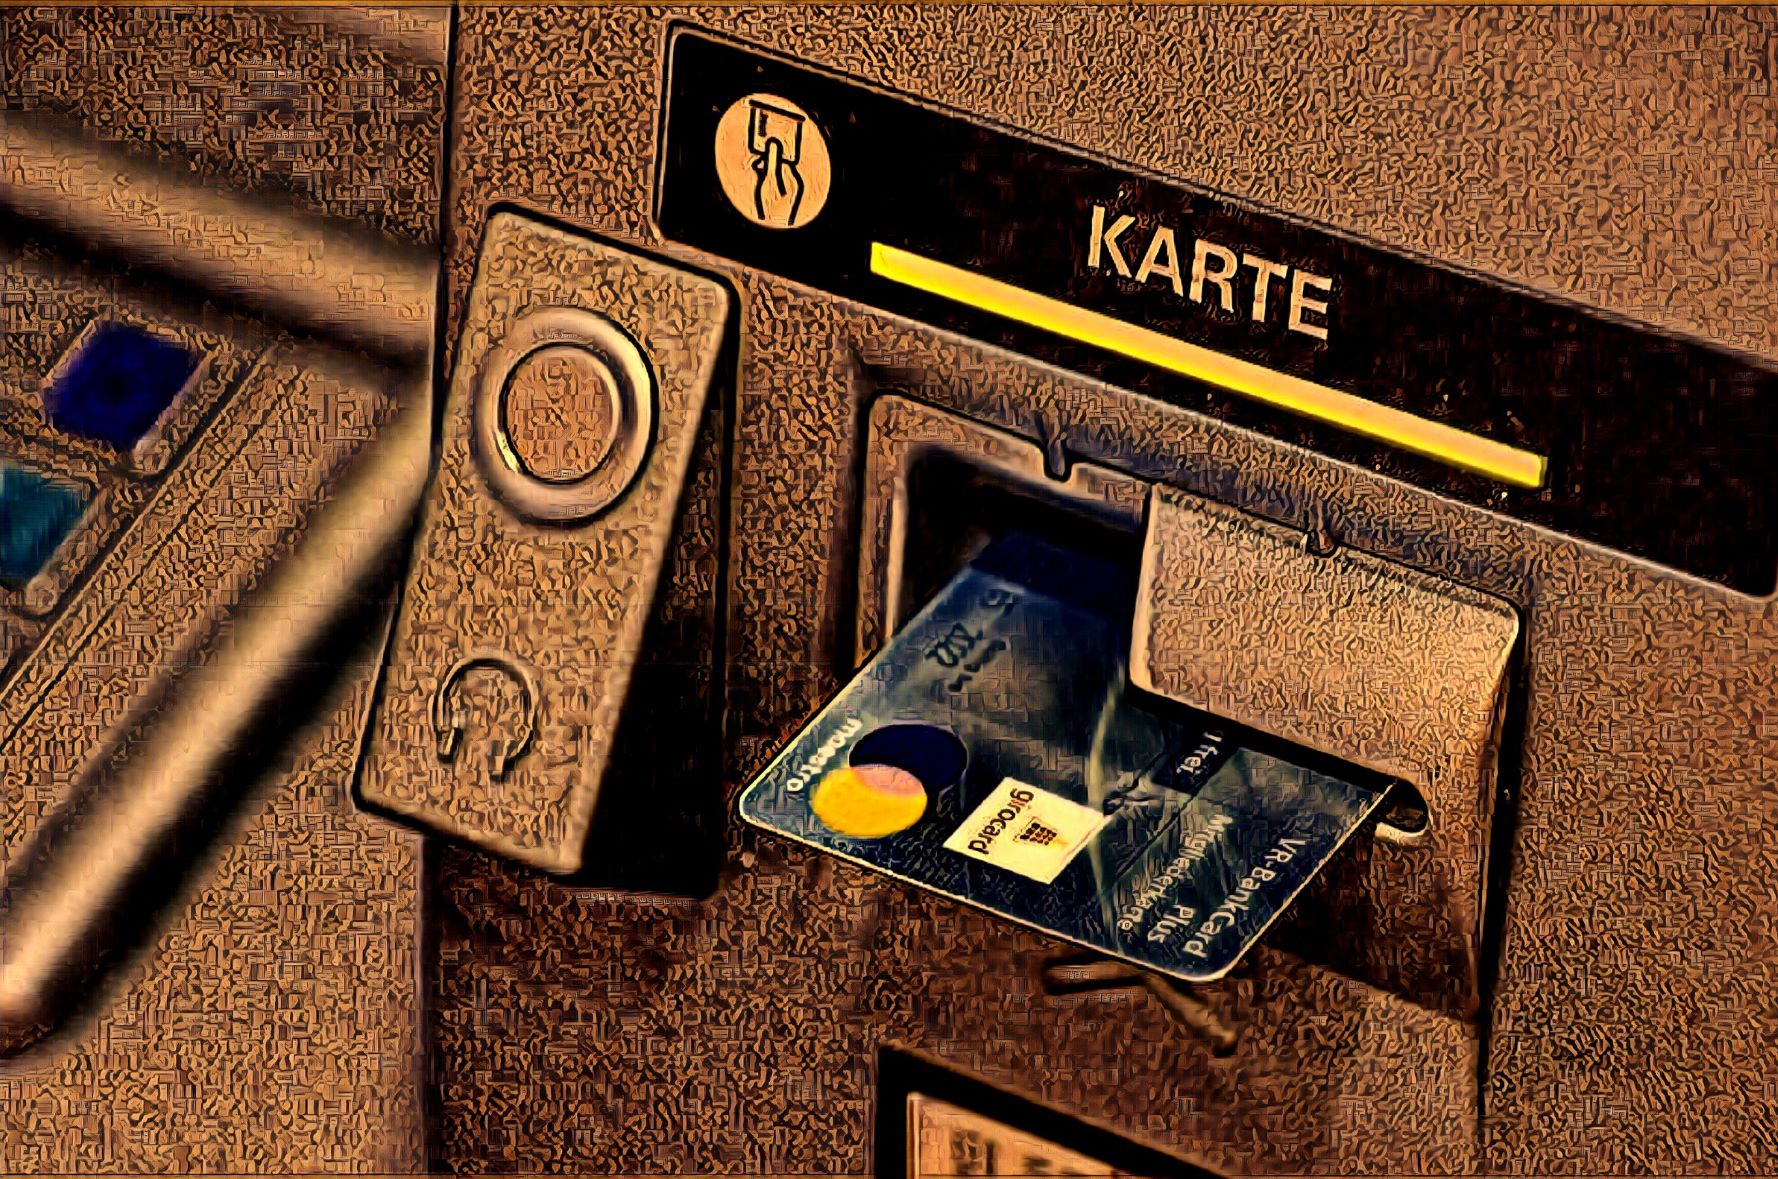 Grünes Licht für Bargeld abheben im Geschäft - Kartensicherheit